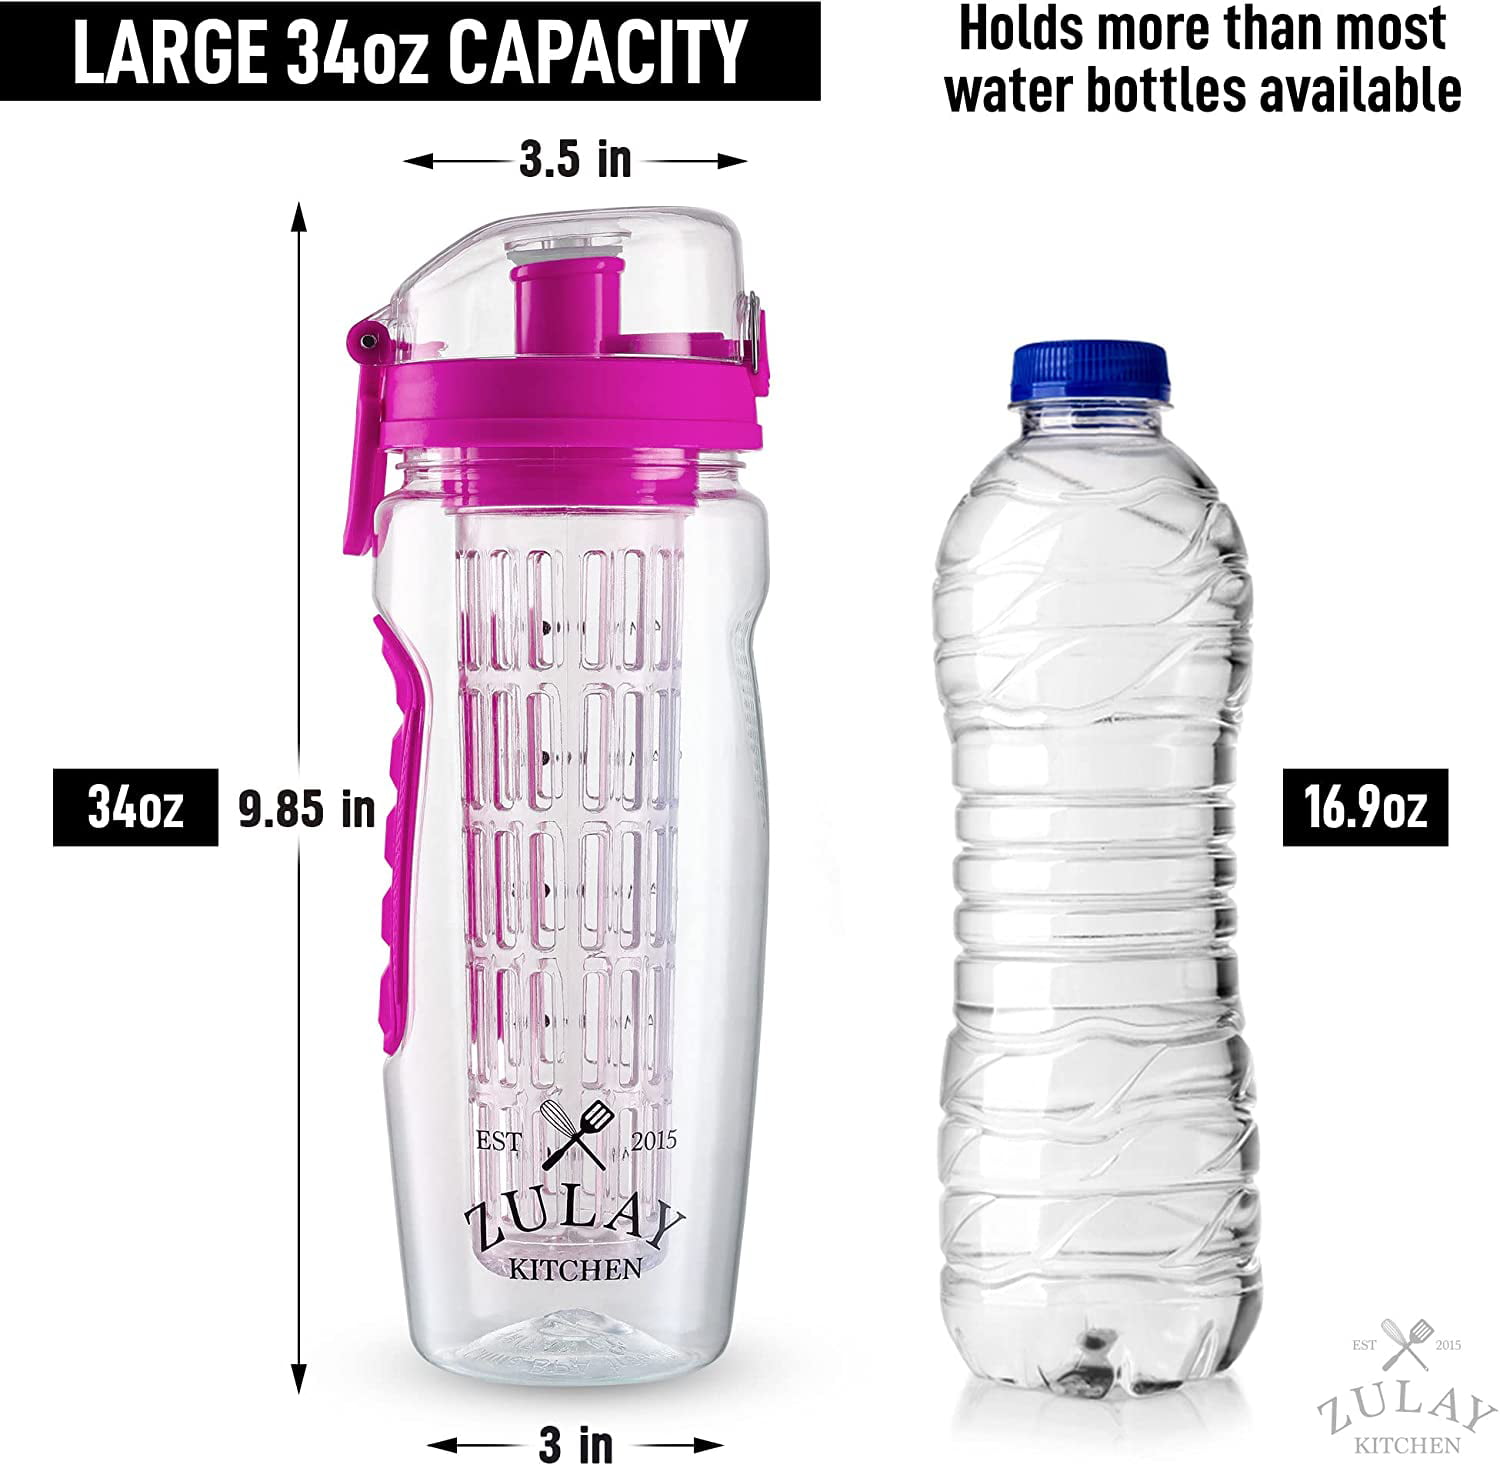 1pc 480ml Fruit Plastic Water Bottle Portable Water Bottles Cute